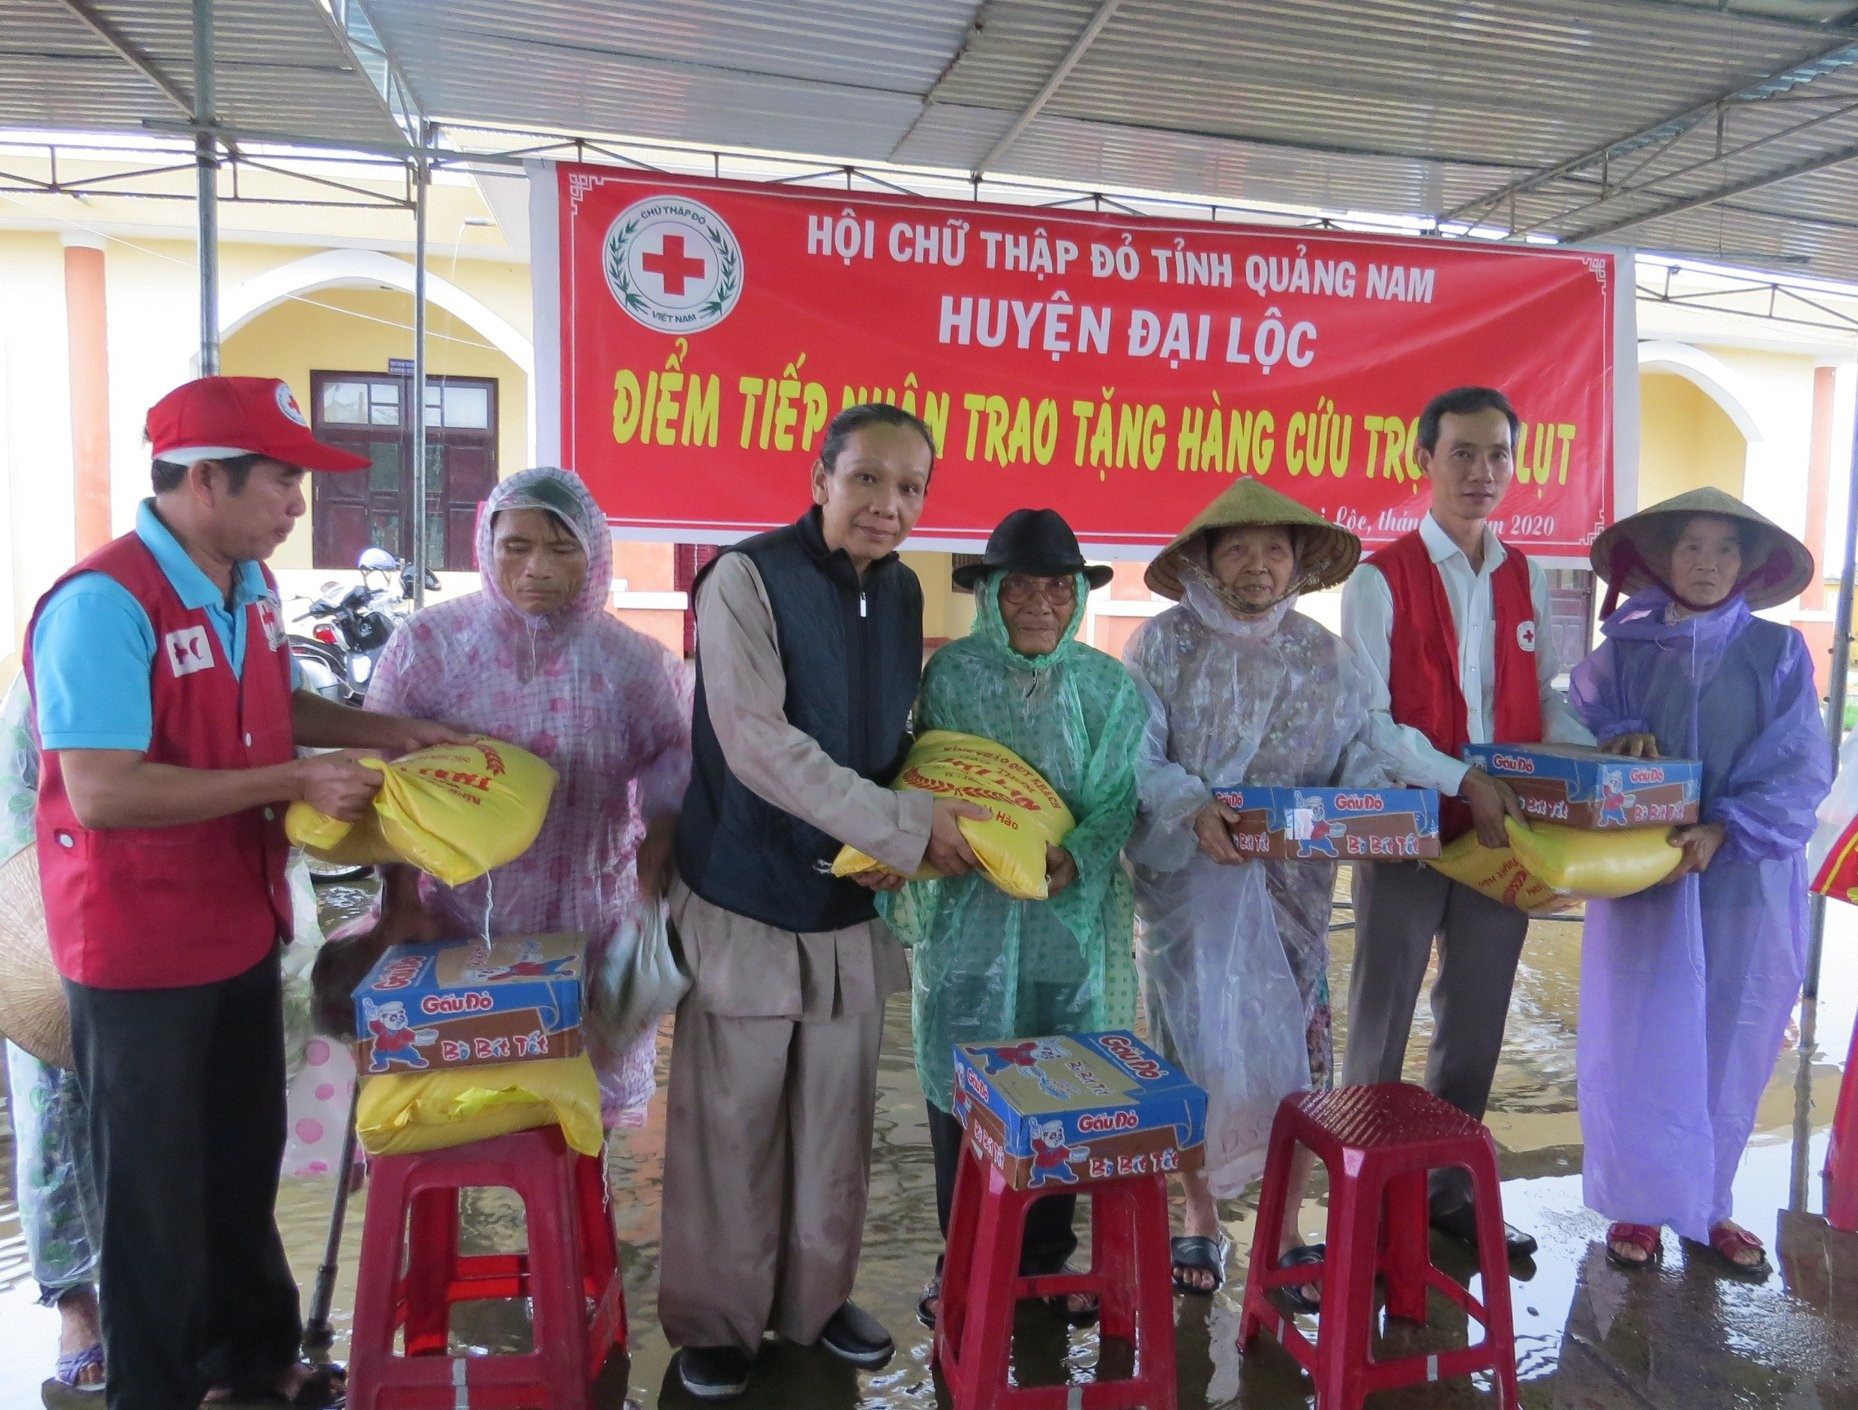 Hội Chữ thập đỏ tiếp nhận và trao quà hỗ người dân vùng lũ. Ảnh: P.C.R